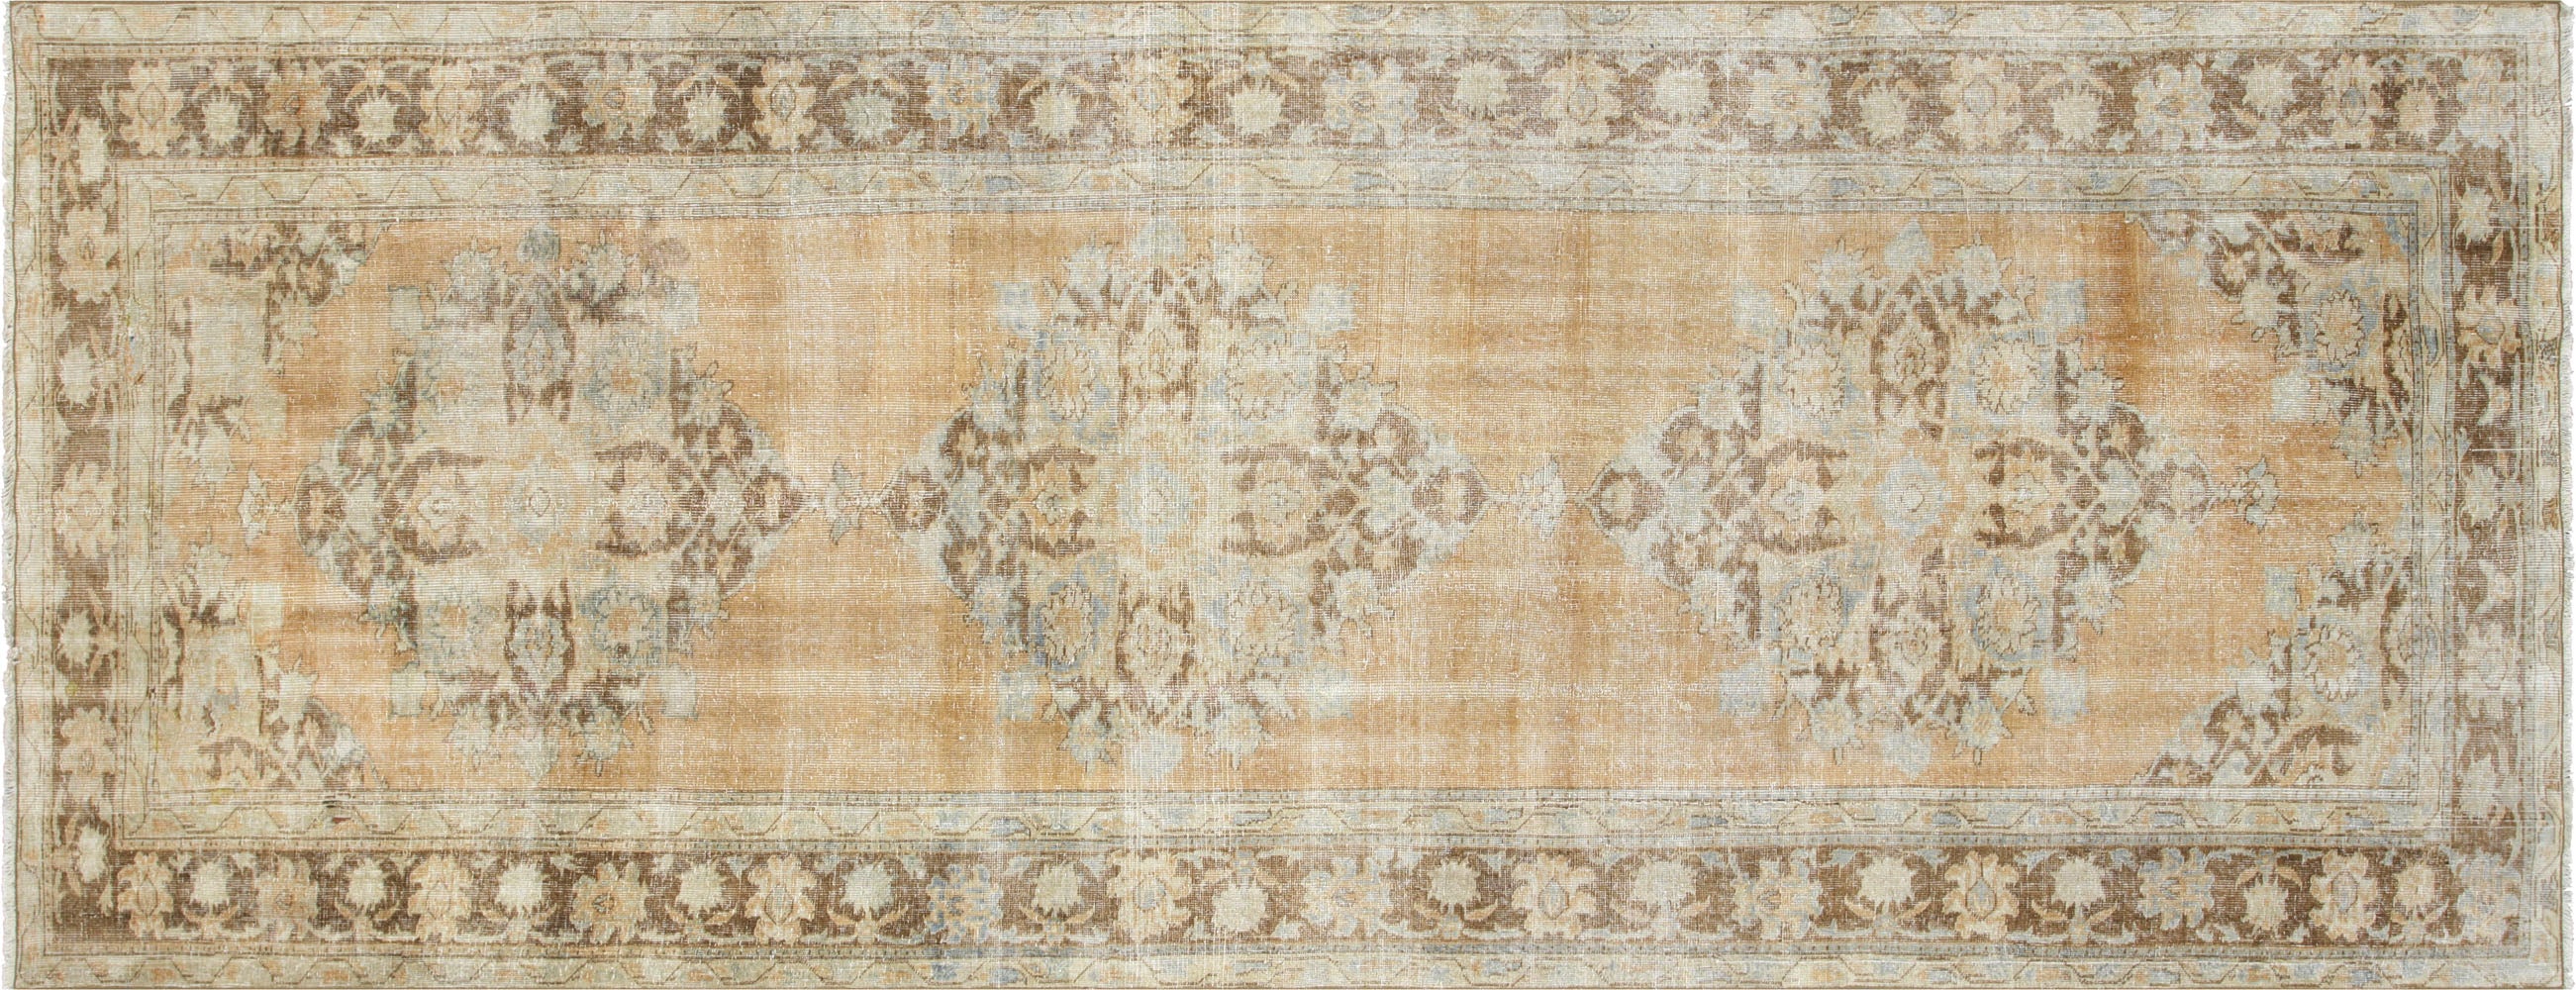 Vintage Turkish Oushak Carpet - 4'11" x 12'10"